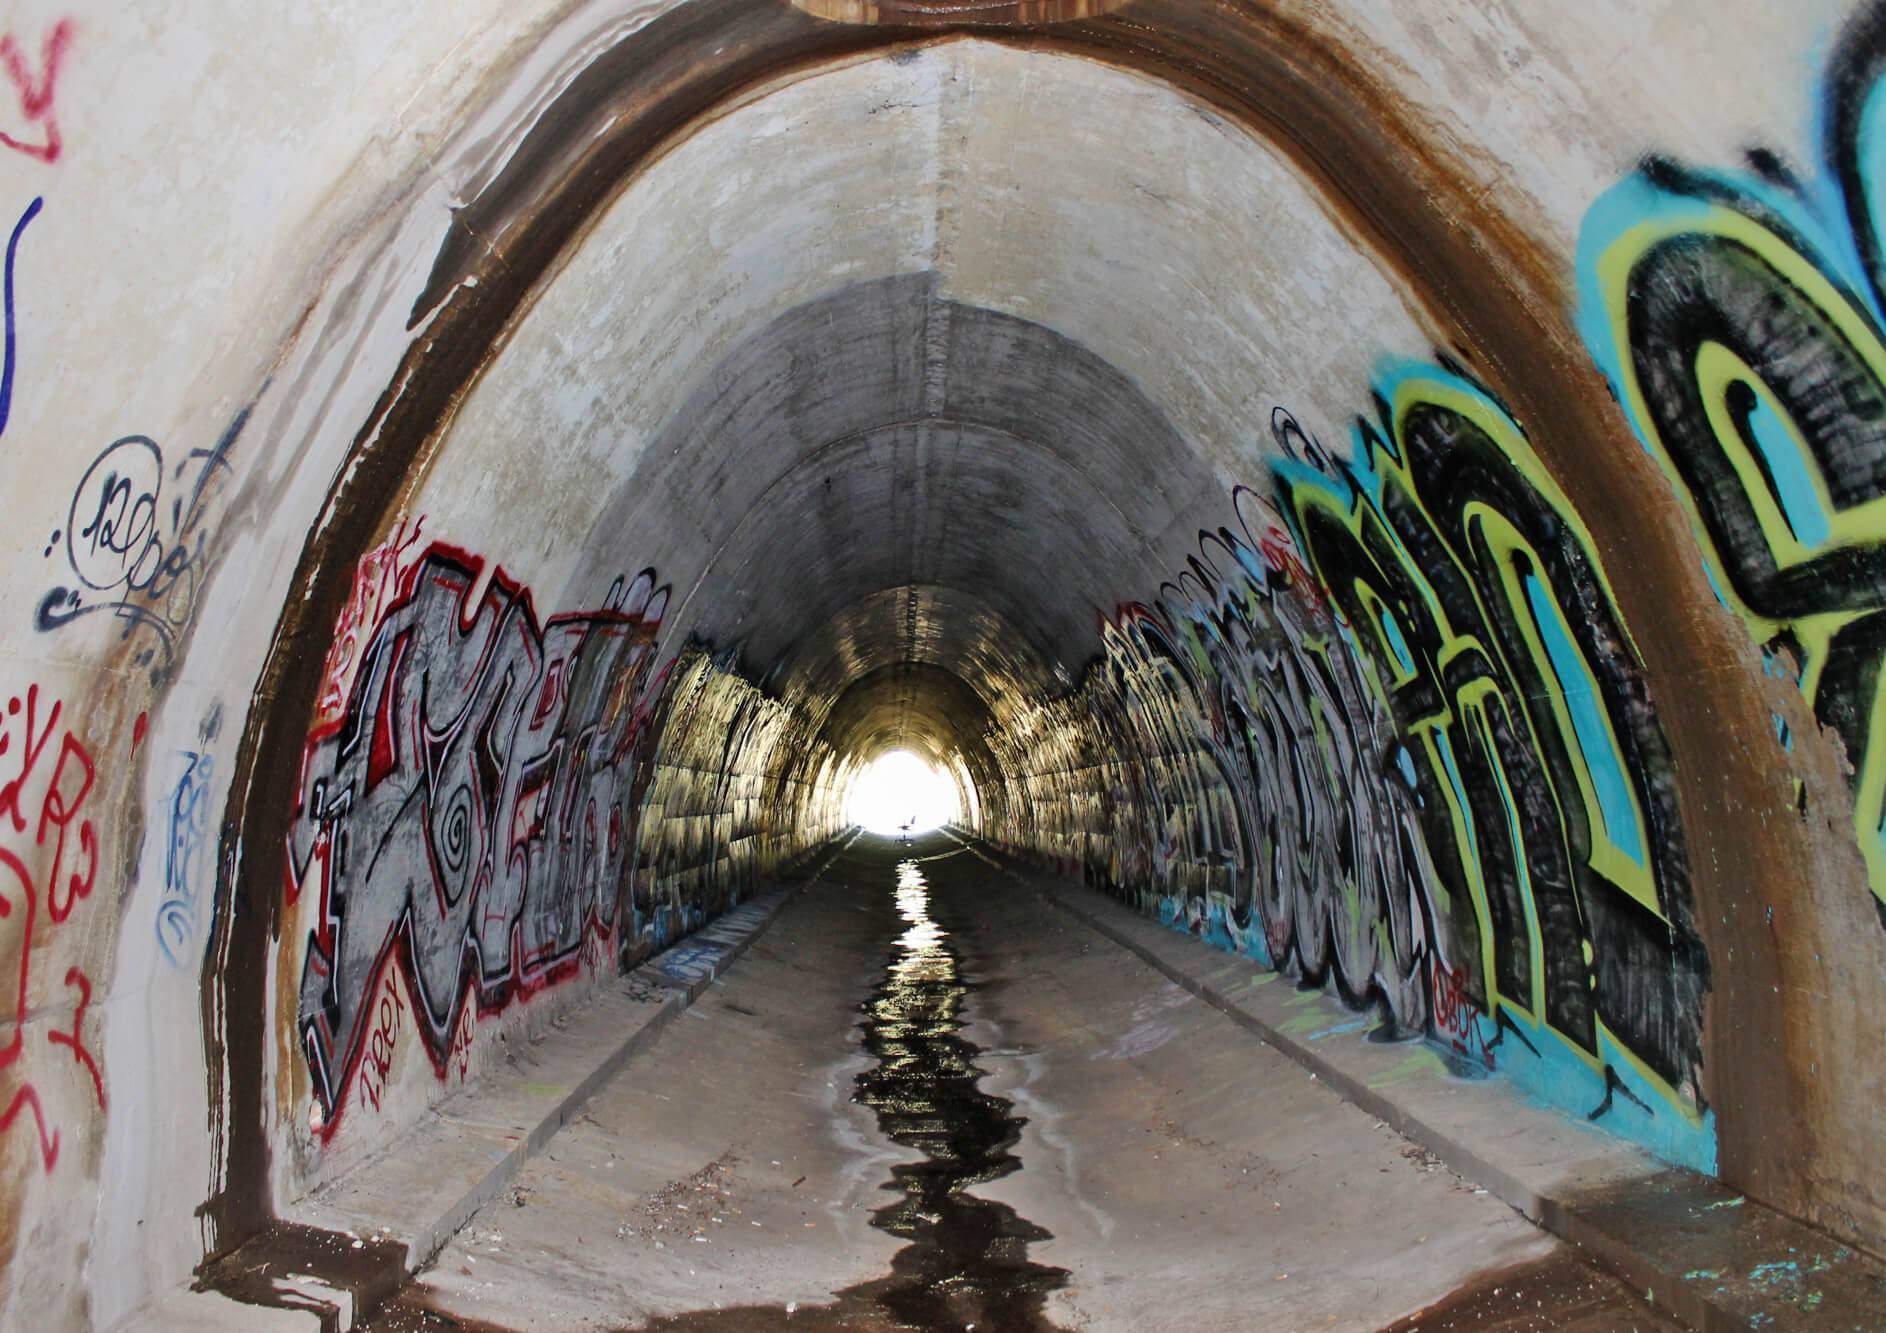 faze rug’s haunted tunnel san diego photos